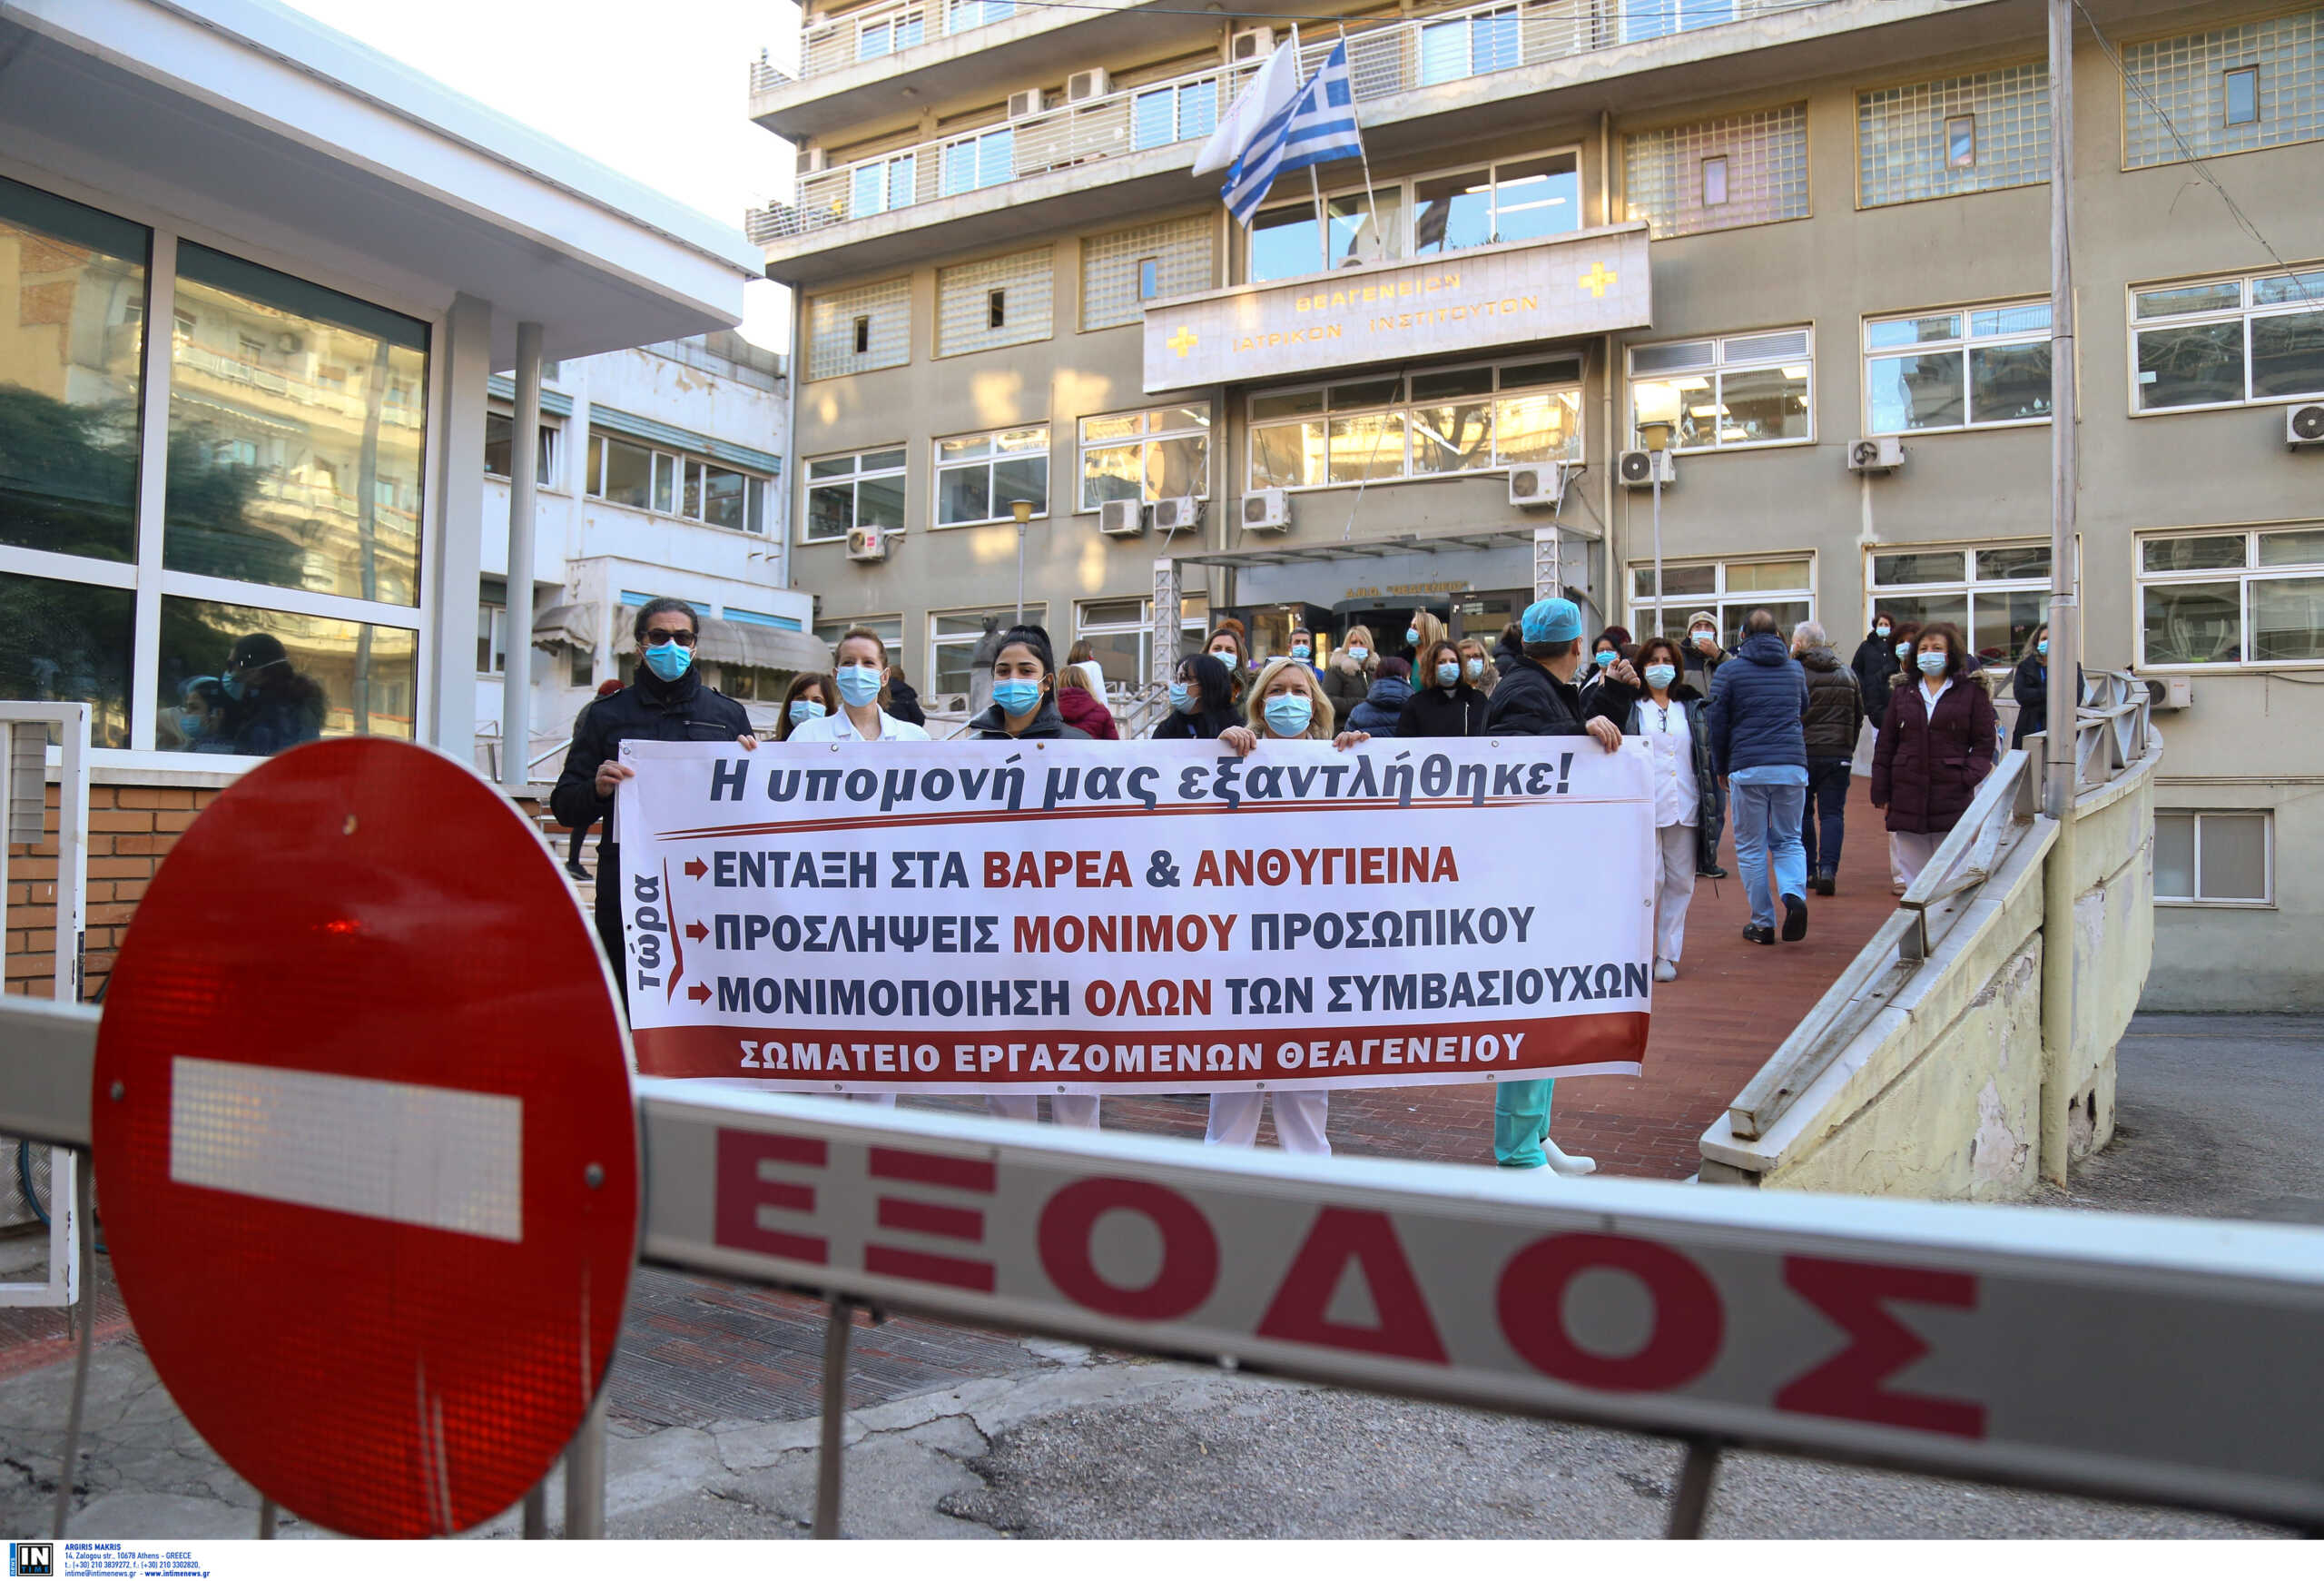 Θεαγένειο νοσοκομείο: Διαμαρτυρία και καταγγελίες από εργαζόμενους για τραγικές ελλείψεις